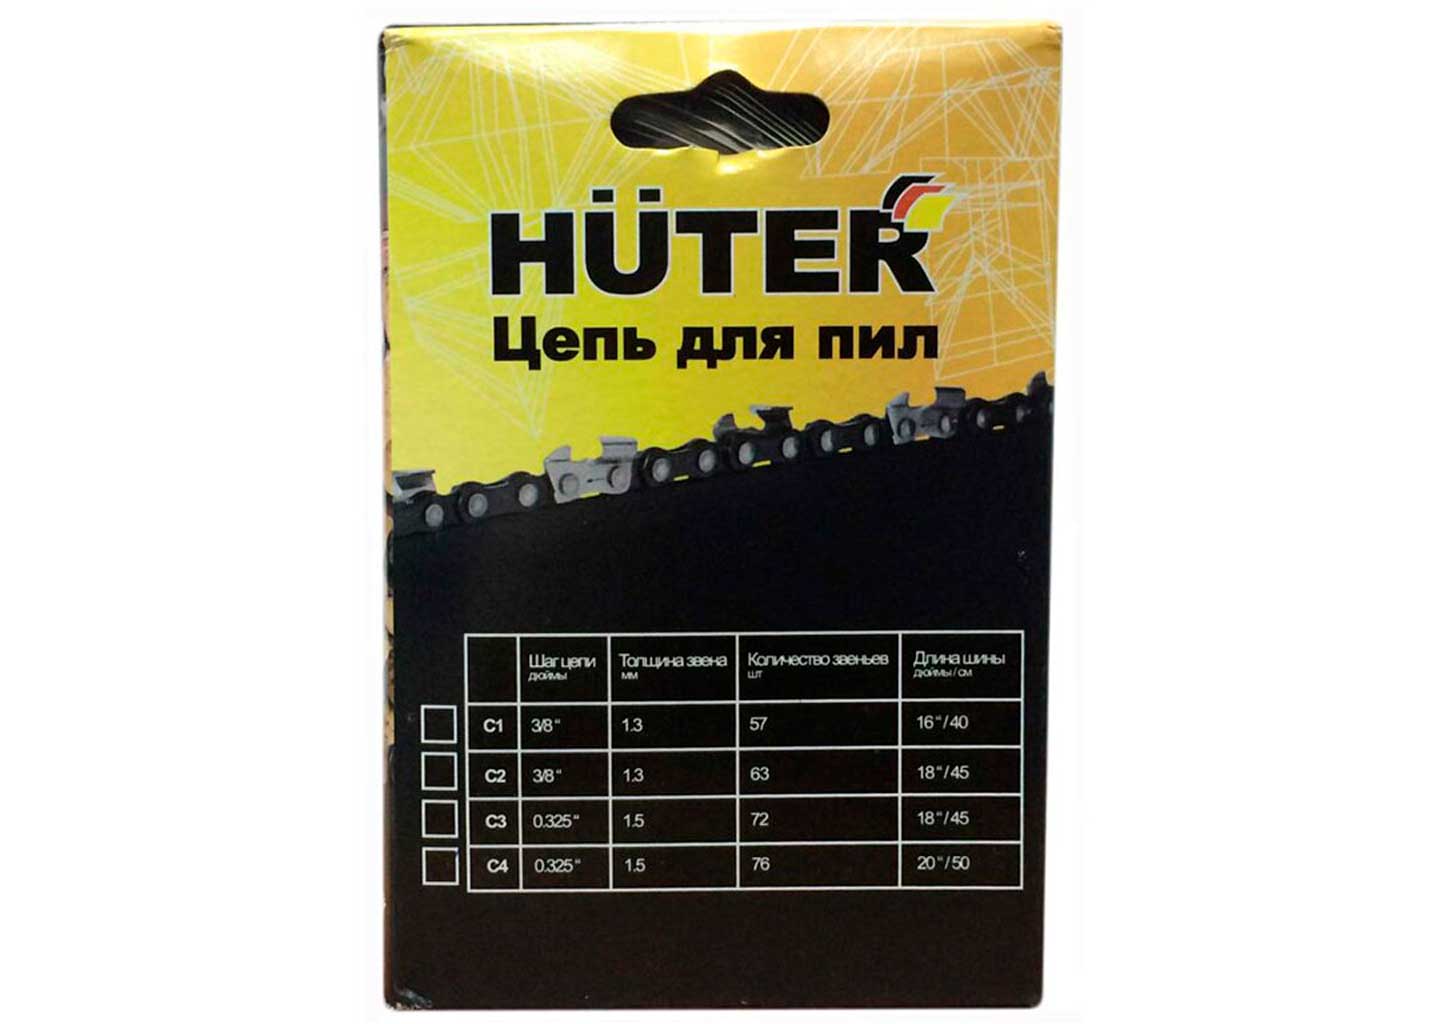 Цепь пильная Huter C4, 0.325", 1,5 мм, 76 звеньев